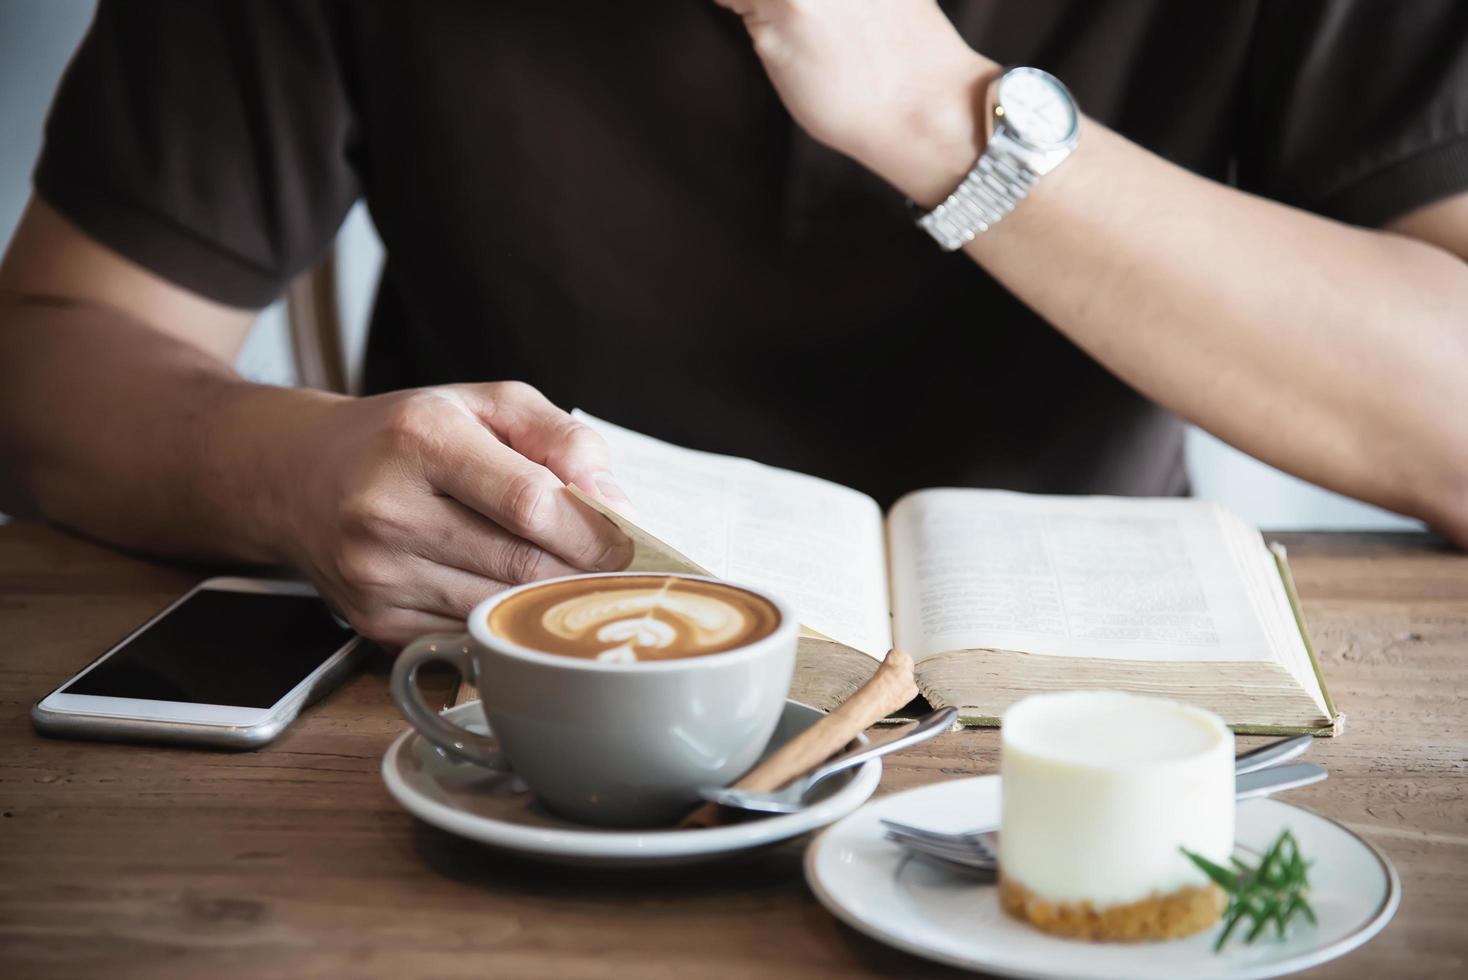 entspannen sie sich asiatischer mann, trinken sie kaffee und lesen sie ein buch in einem modernen café - menschen mit kaffeetasse einfaches lifestyle-konzept foto